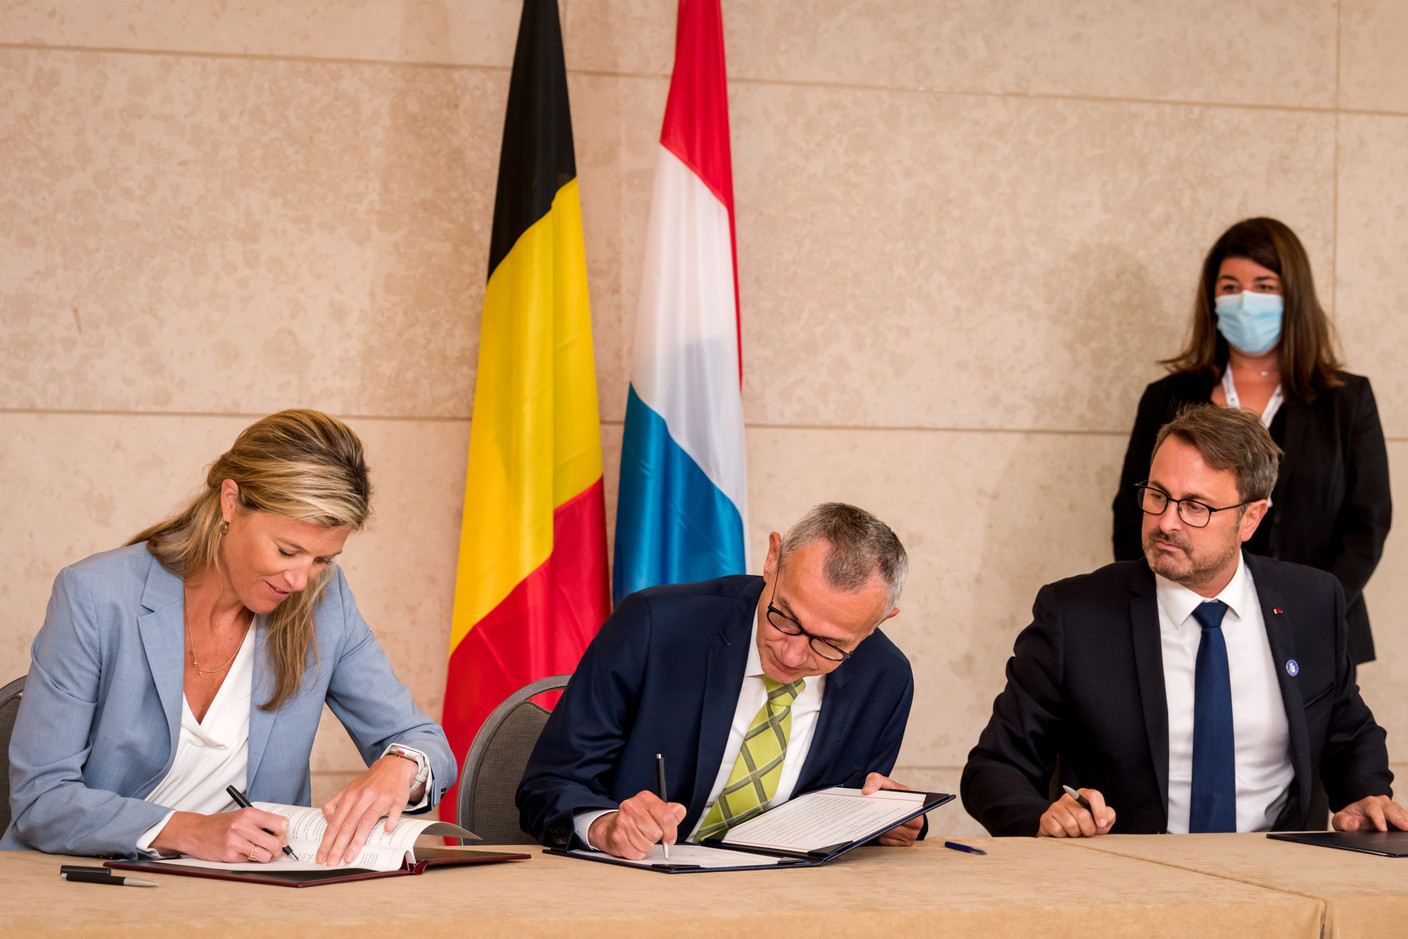 Signature d’une déclaration commune sur la coopération en matière de gestion de crise, avec Annelies Verlinden, ministre de l’Intérieur, et Frank Vandenbroucke, ministre de la Santé publique. (Photo: Nader Ghavami)